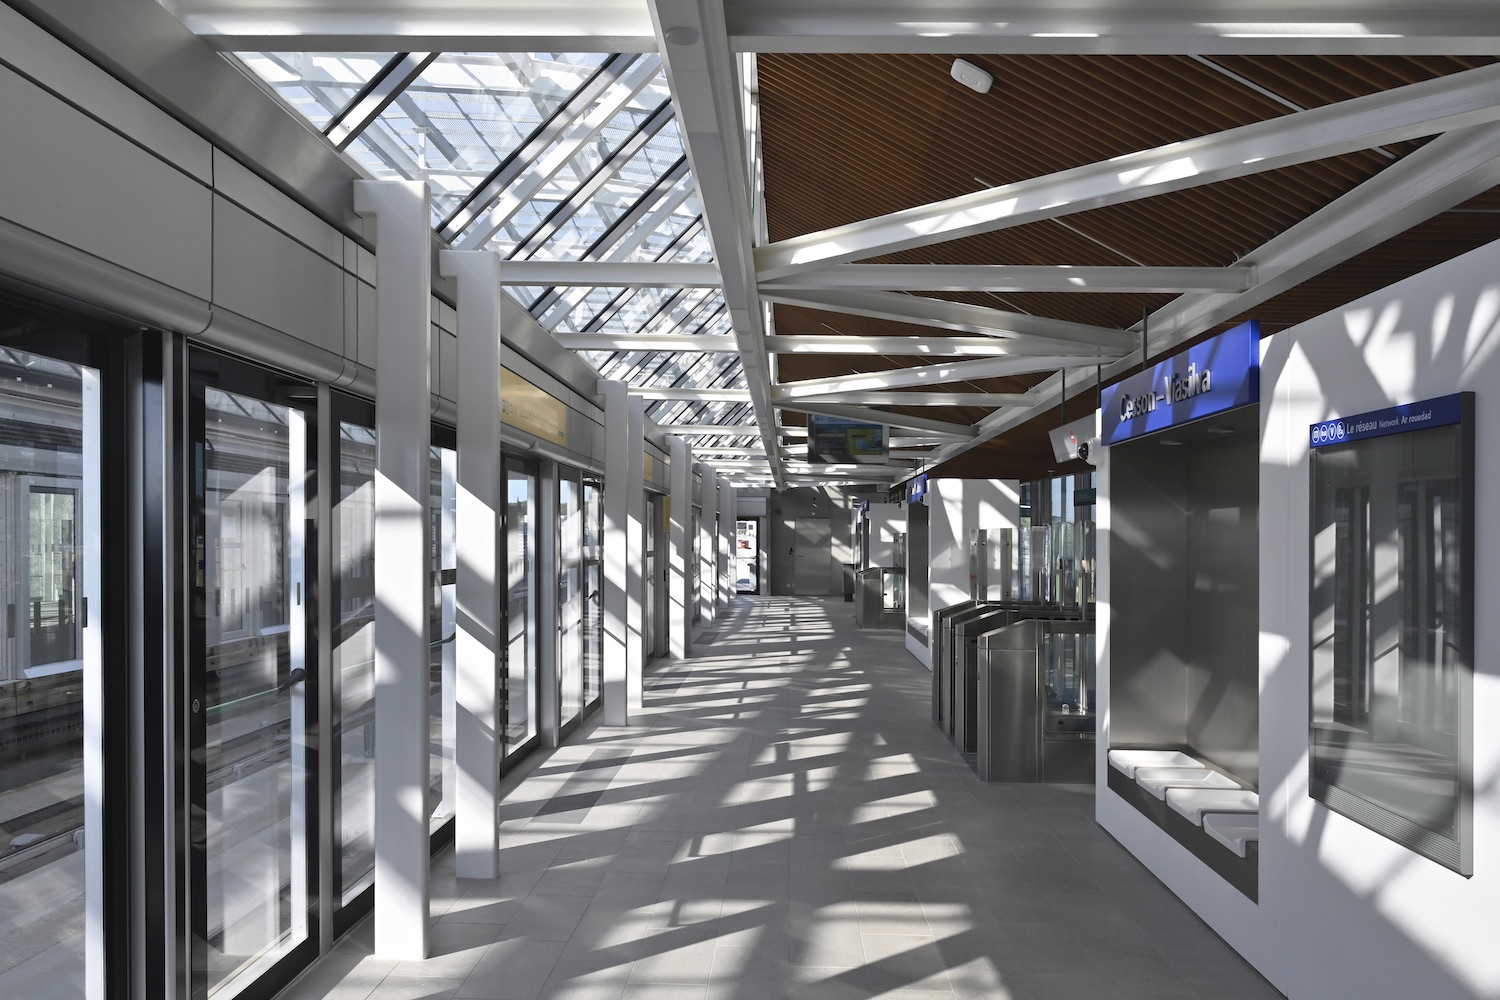 La station de métro Cesson ViaSilva baignée de lumière